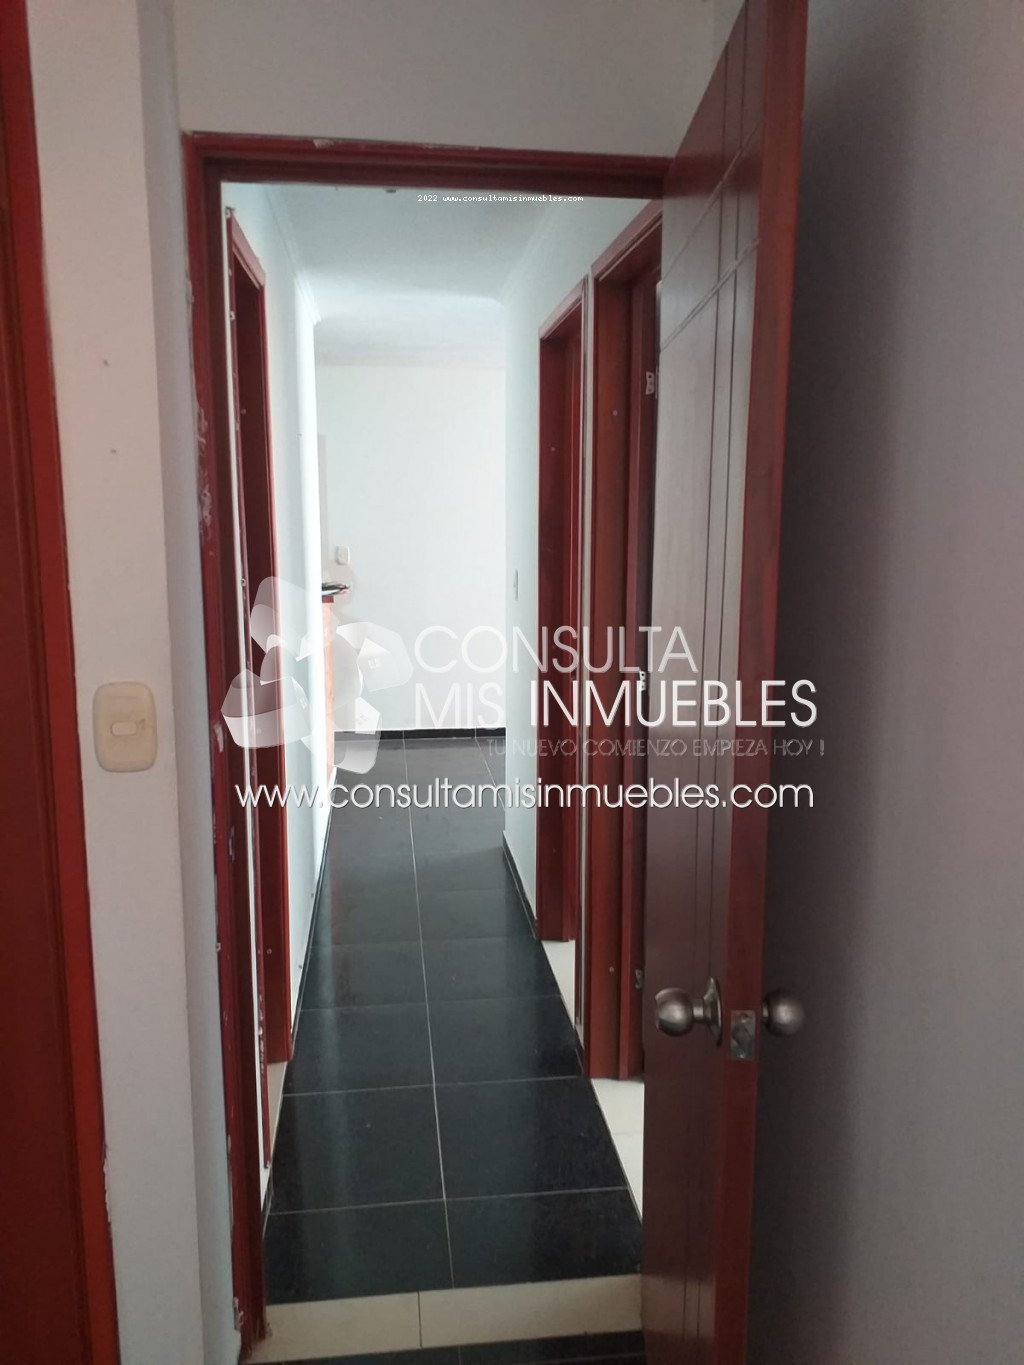 Vendo Apartamento en el Barrio Ciudadela El Porvenir en Ibagué, Tolima de Colombia | Consulta Mis Inmuebles S.A.S. | Tu nuevo comienzo empieza hoy!